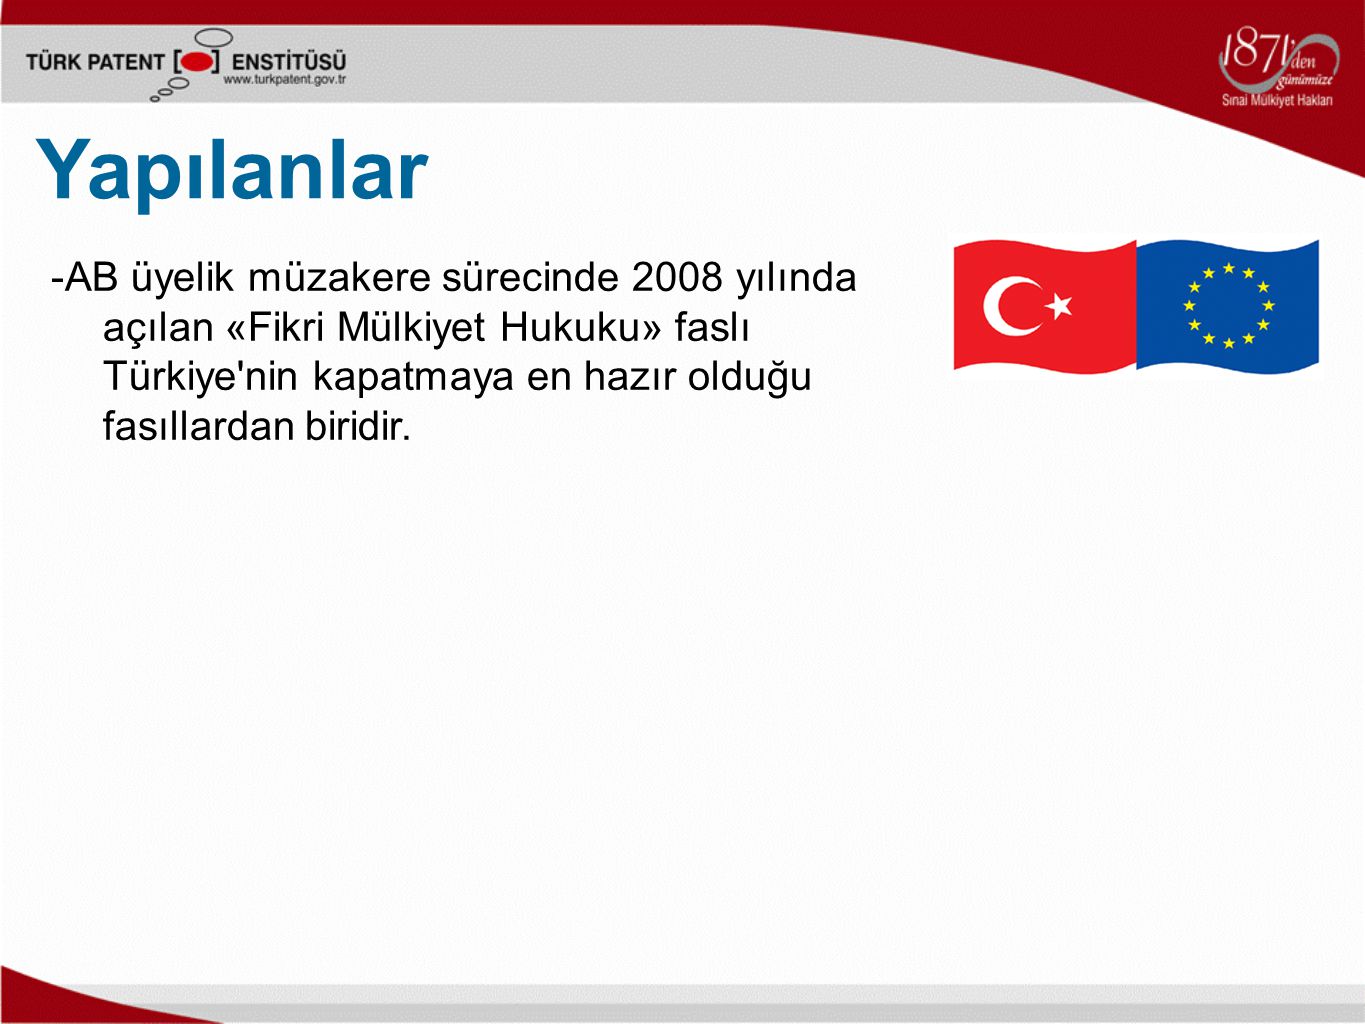 -AB üyelik müzakere sürecinde 2008 yılında açılan «Fikri Mülkiyet Hukuku» faslı Türkiye nin kapatmaya en hazır olduğu fasıllardan biridir.